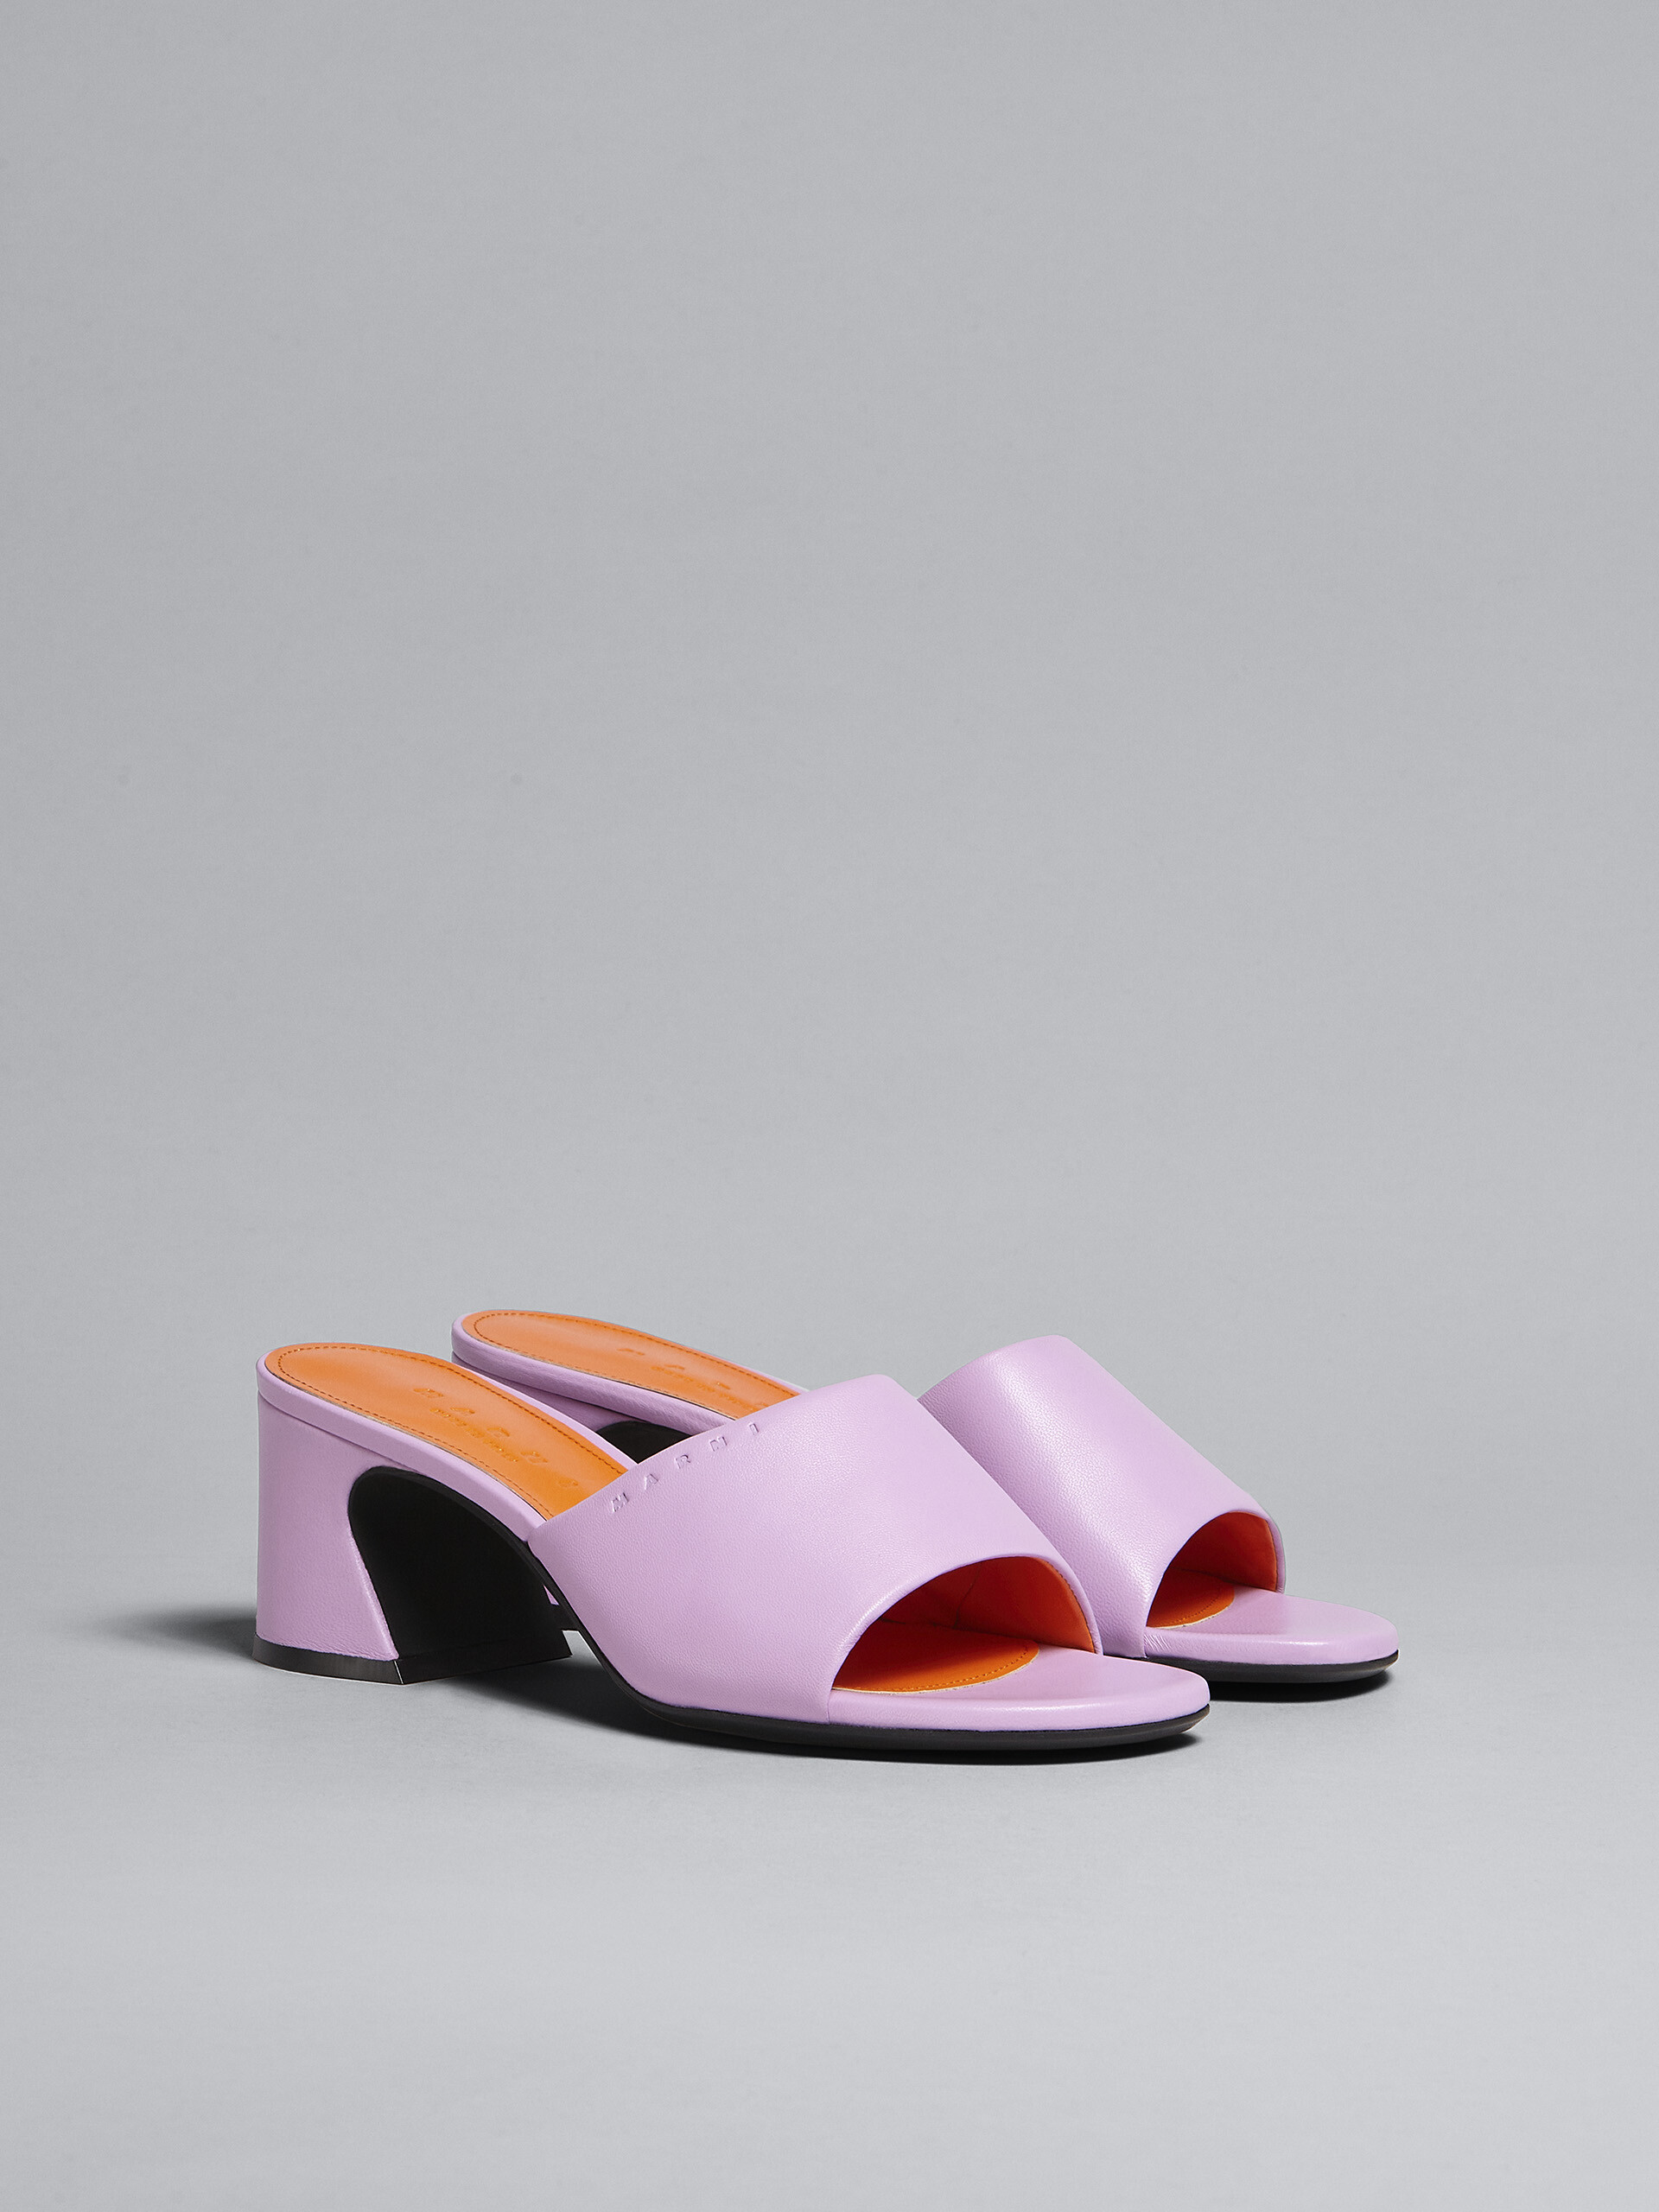 핑크 가죽 샌들 - Sandals - Image 2